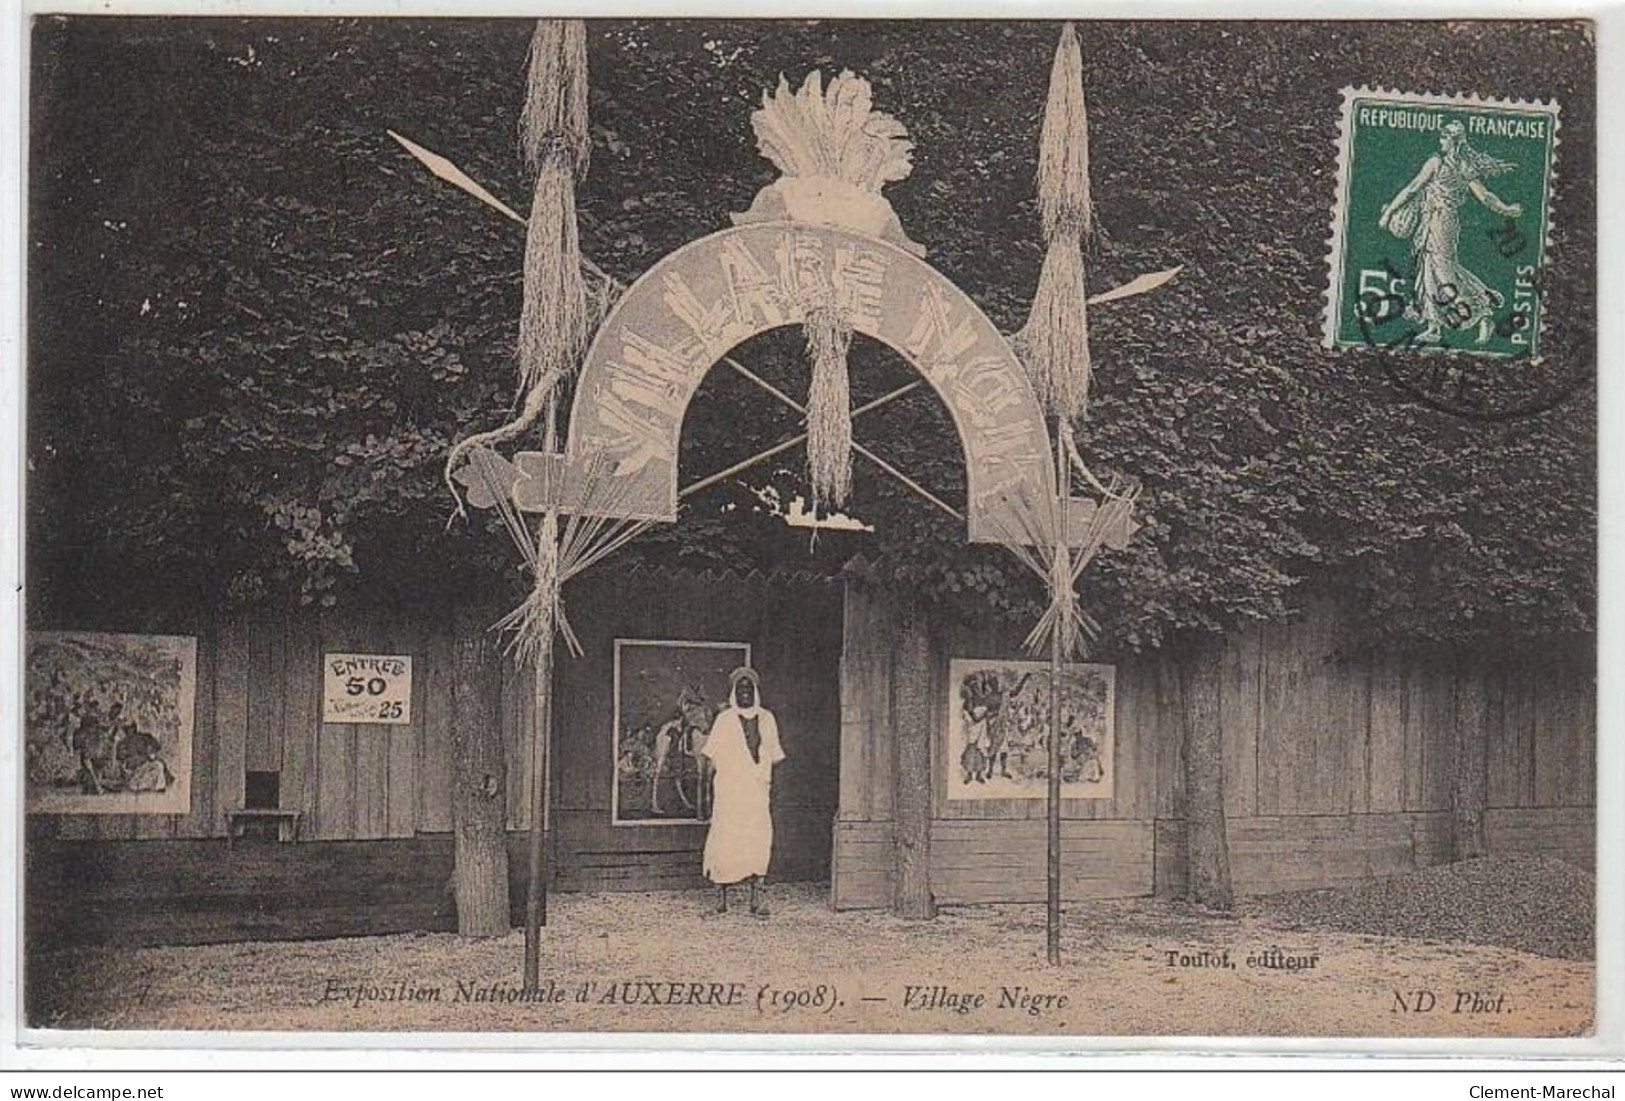 AUXERRE : Exposition Nationale D'Auxerre (1908) - Village Nègre - Très Bon état - Auxerre